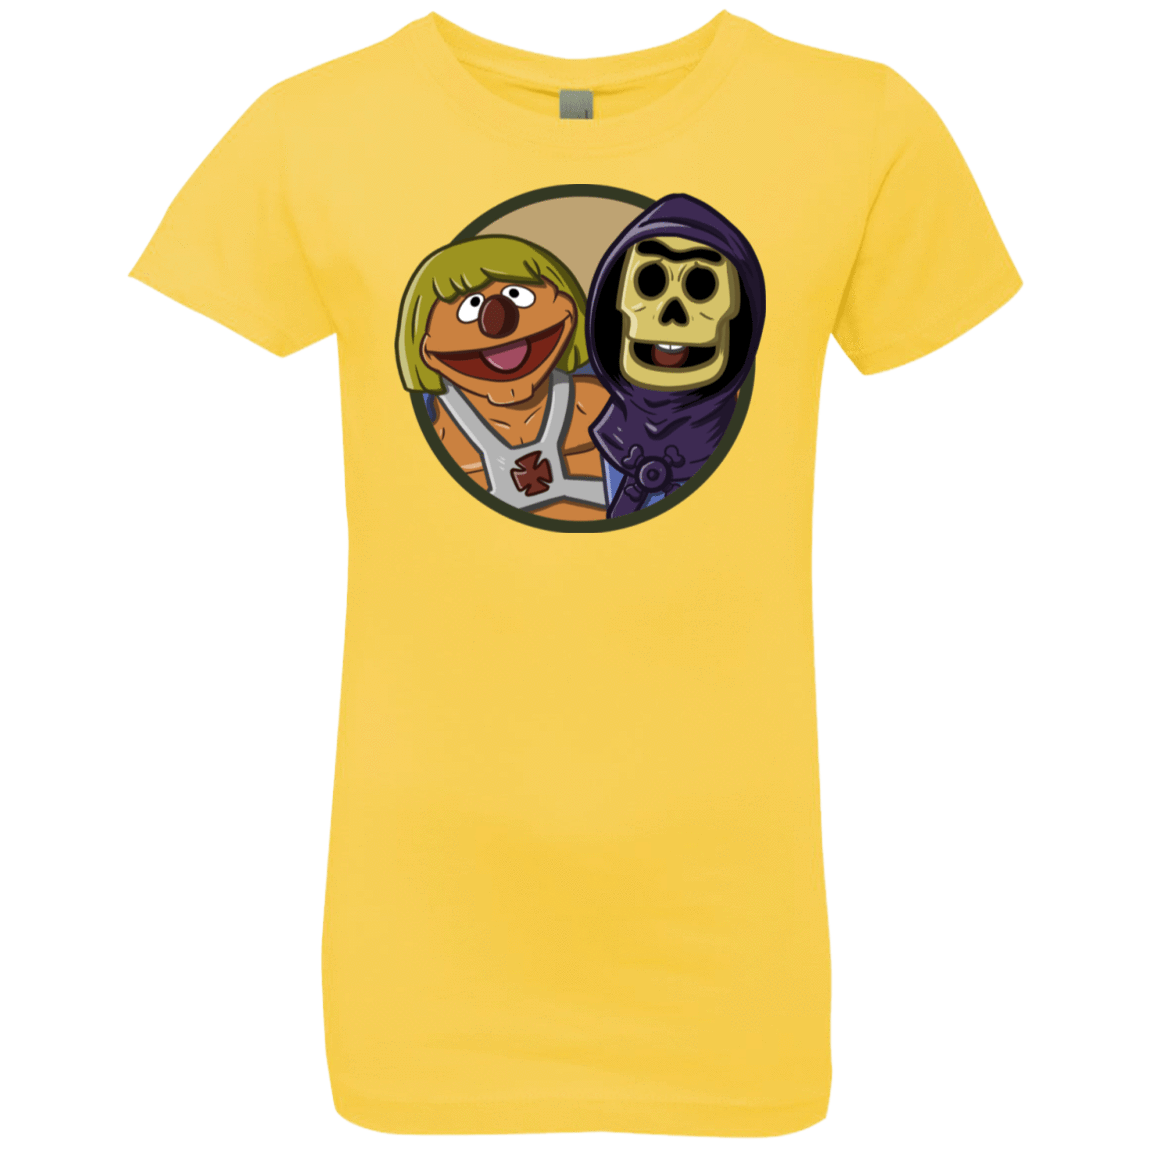 T-Shirts Vibrant Yellow / YXS Bert and Ernie Girls Premium T-Shirt